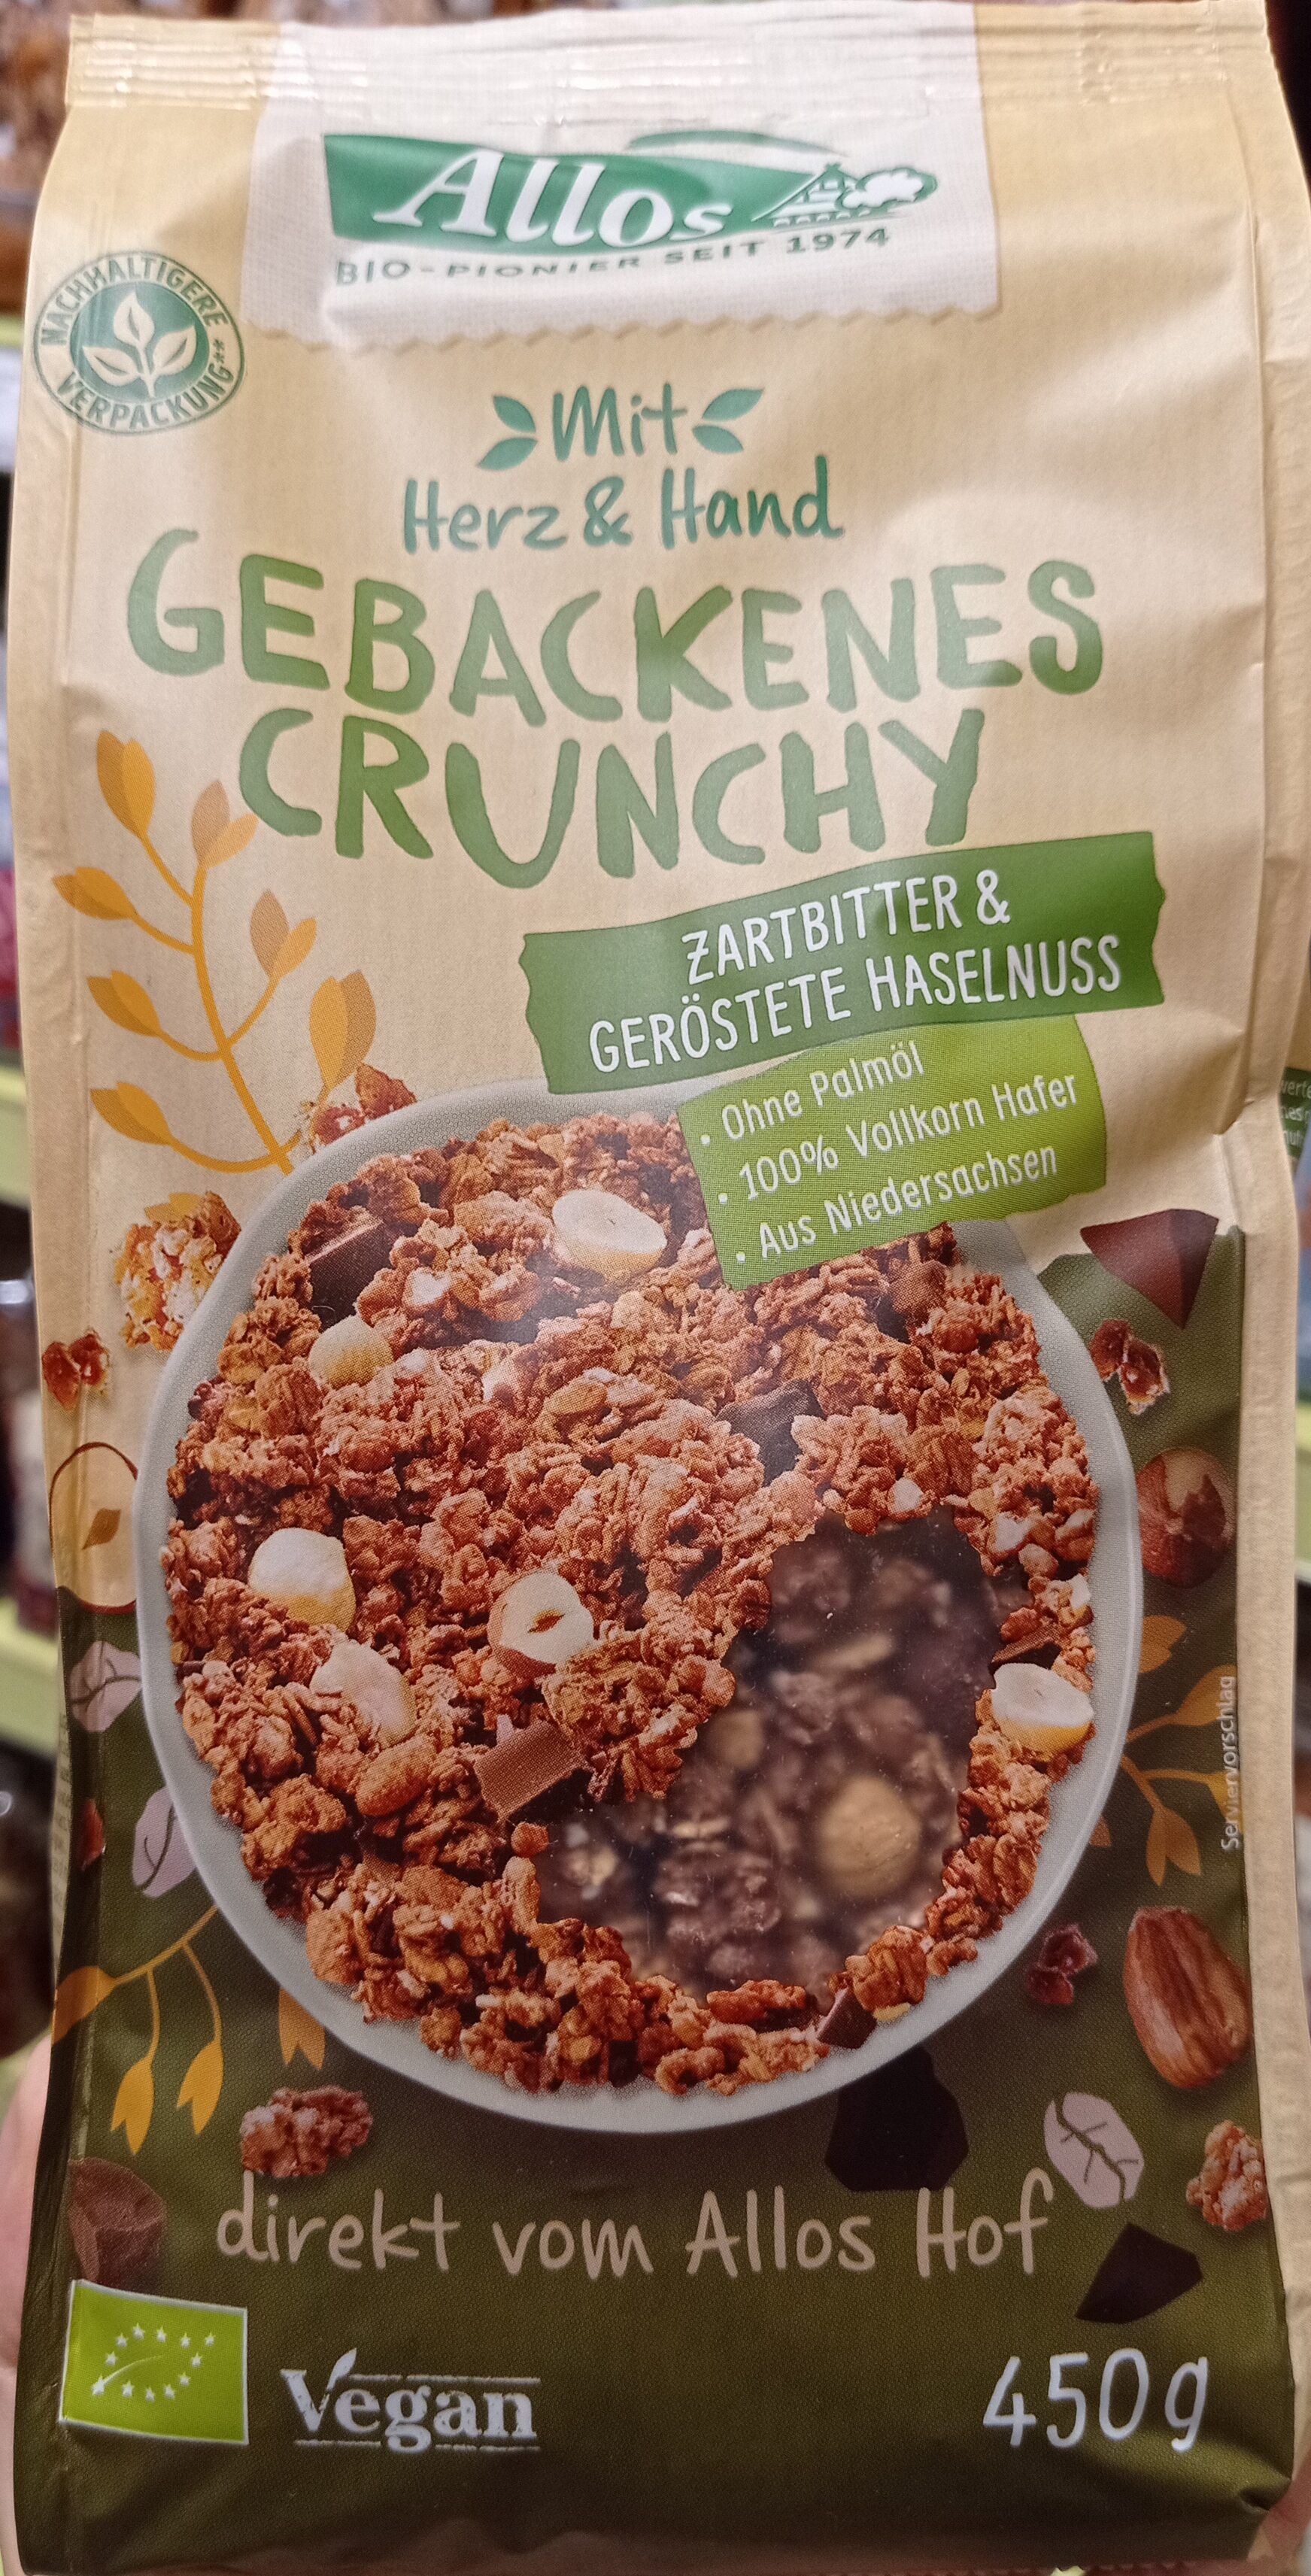 Gebackenes Crunchy Zarbitter & Haselnuss - Produkt